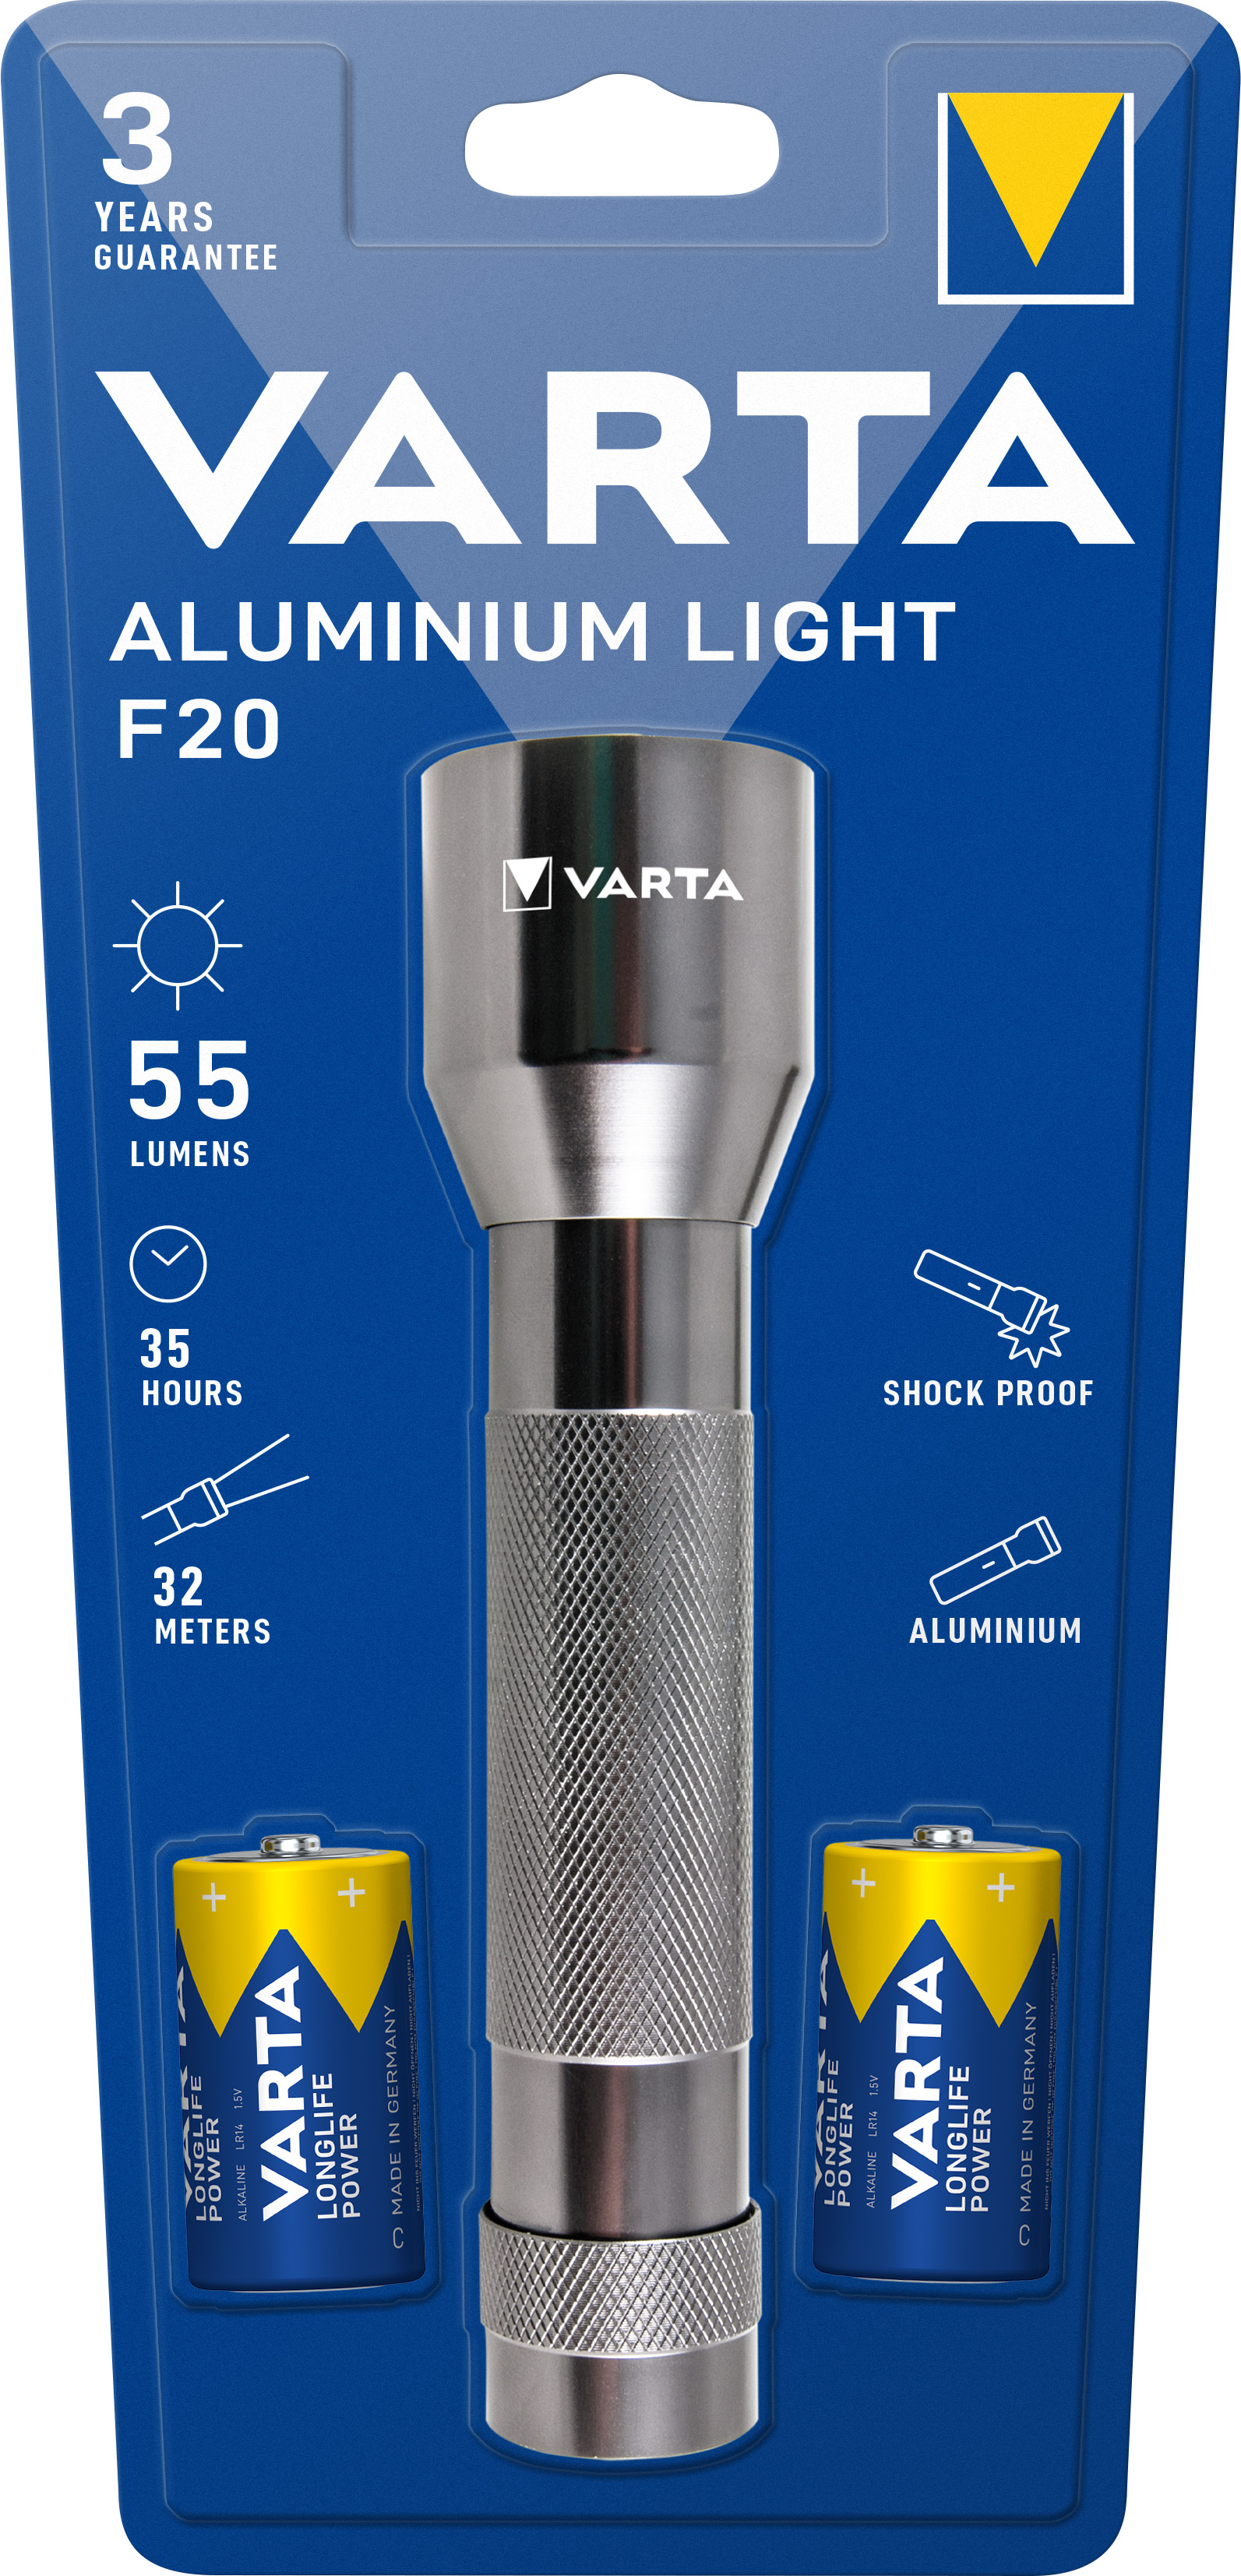 Varta LED Taschenlampe Aluminium Light 55lm, inkl. 2x Batterie Baby C,  Retail Blister | LED-Taschenlampen | LEDs,Taschenlampen, Lichttechnik |  Akkushop